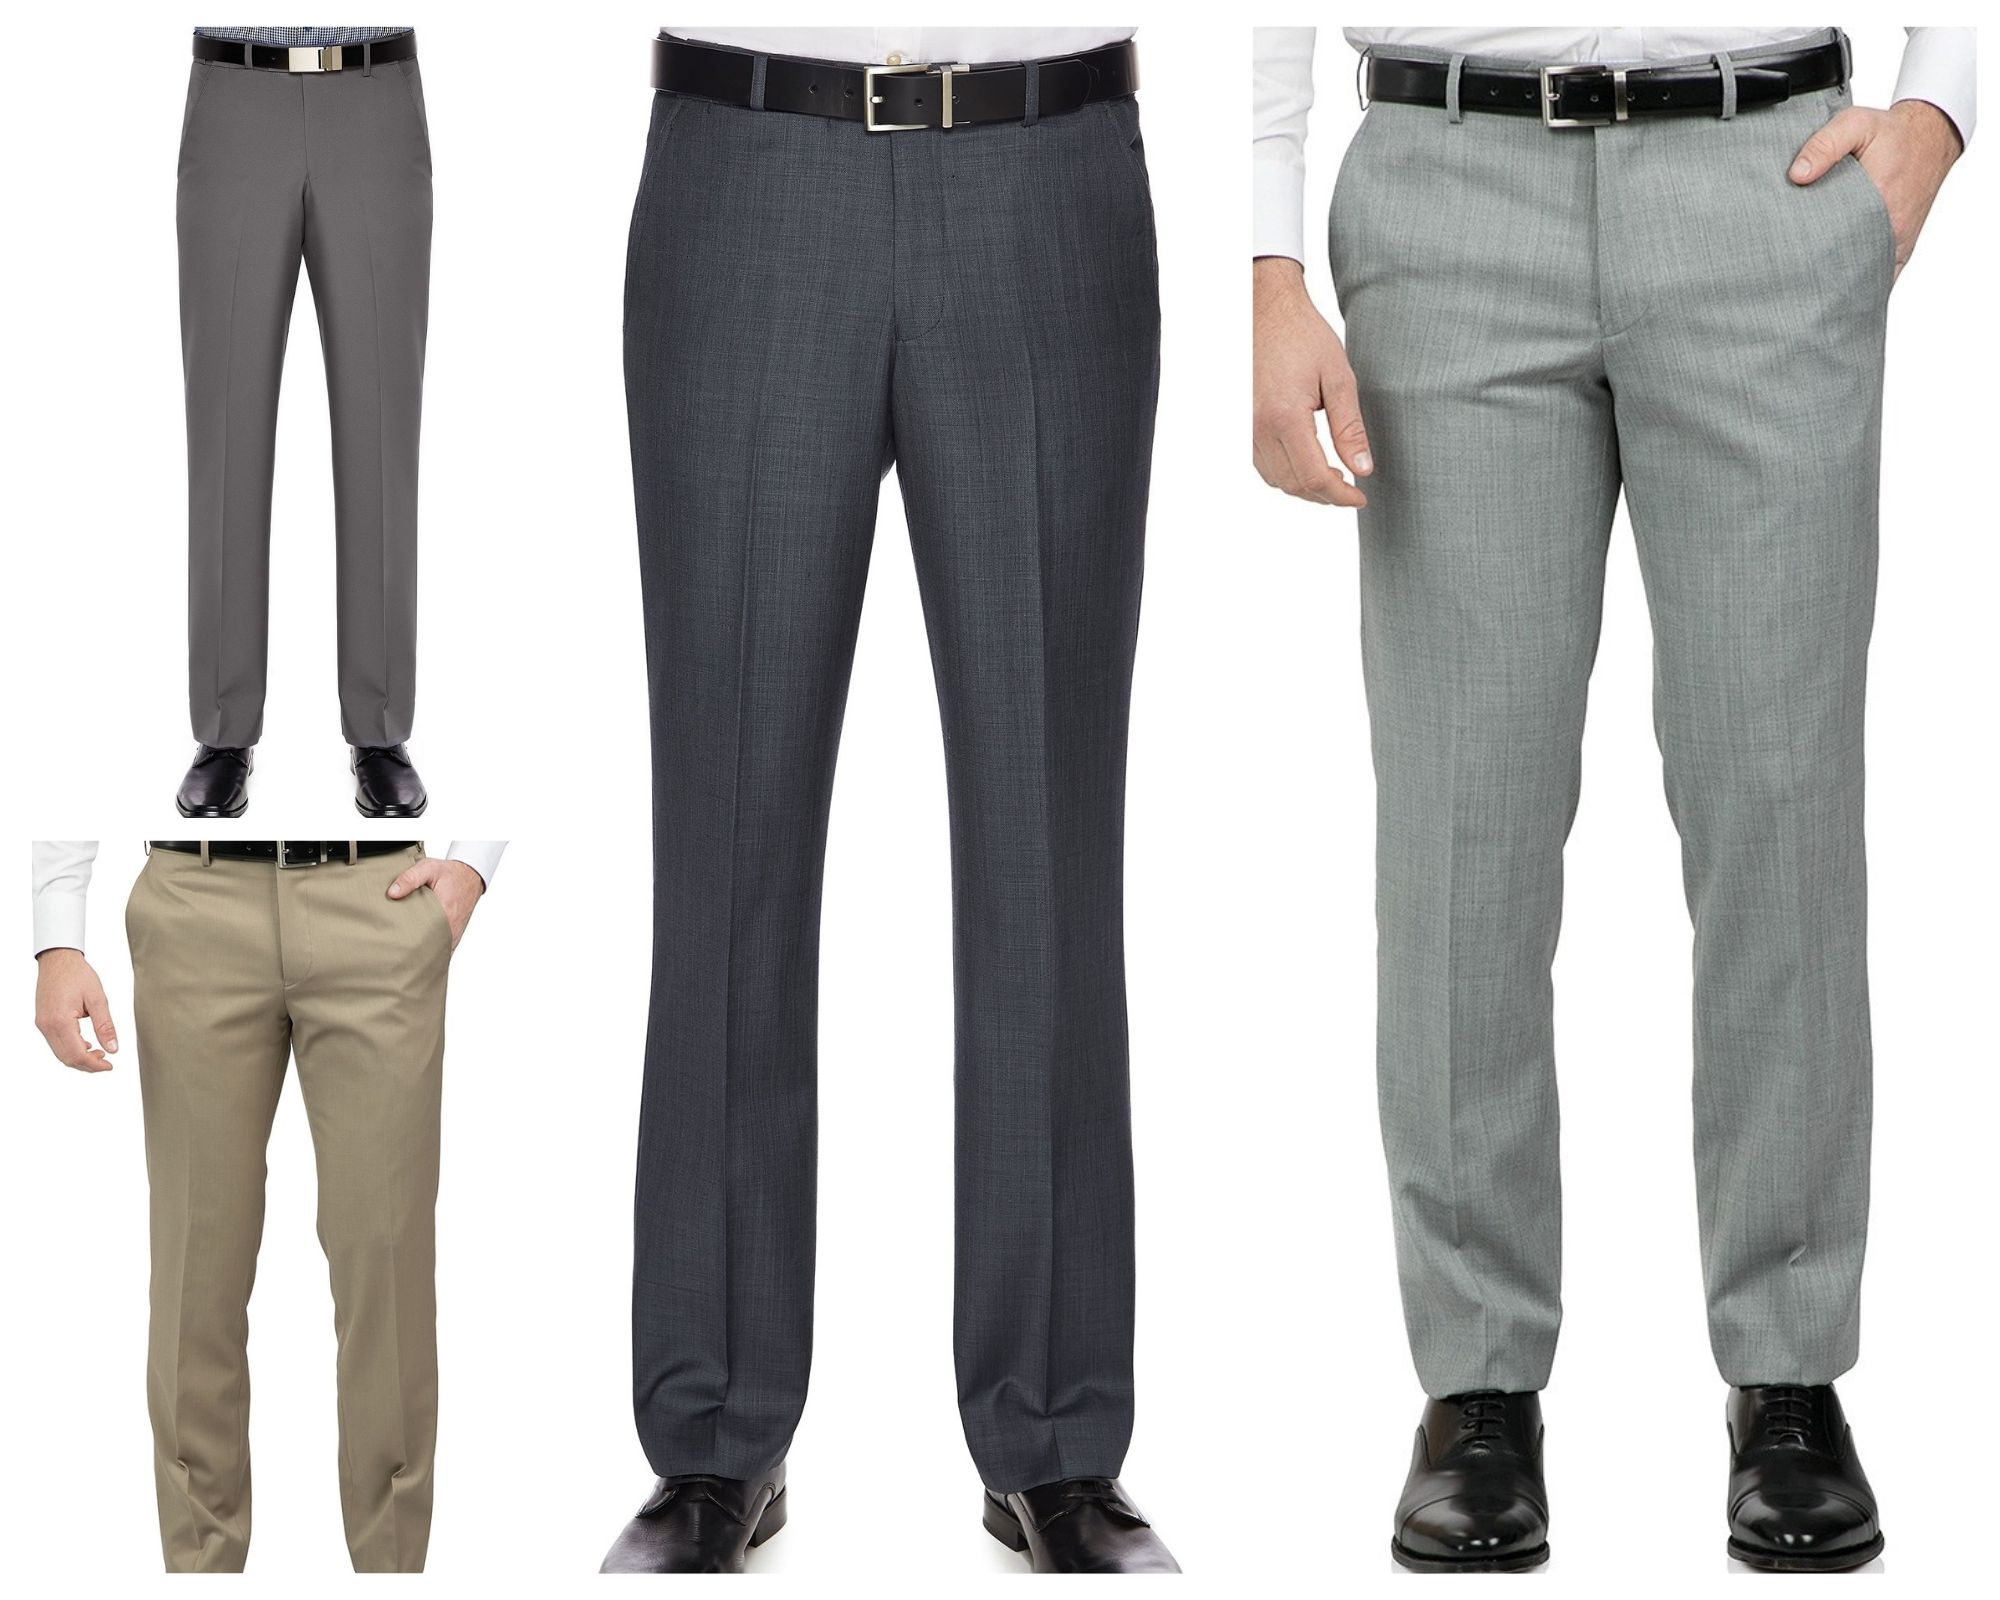 Men's Business Pants & Flexi Waist Trousers 20% Off Online